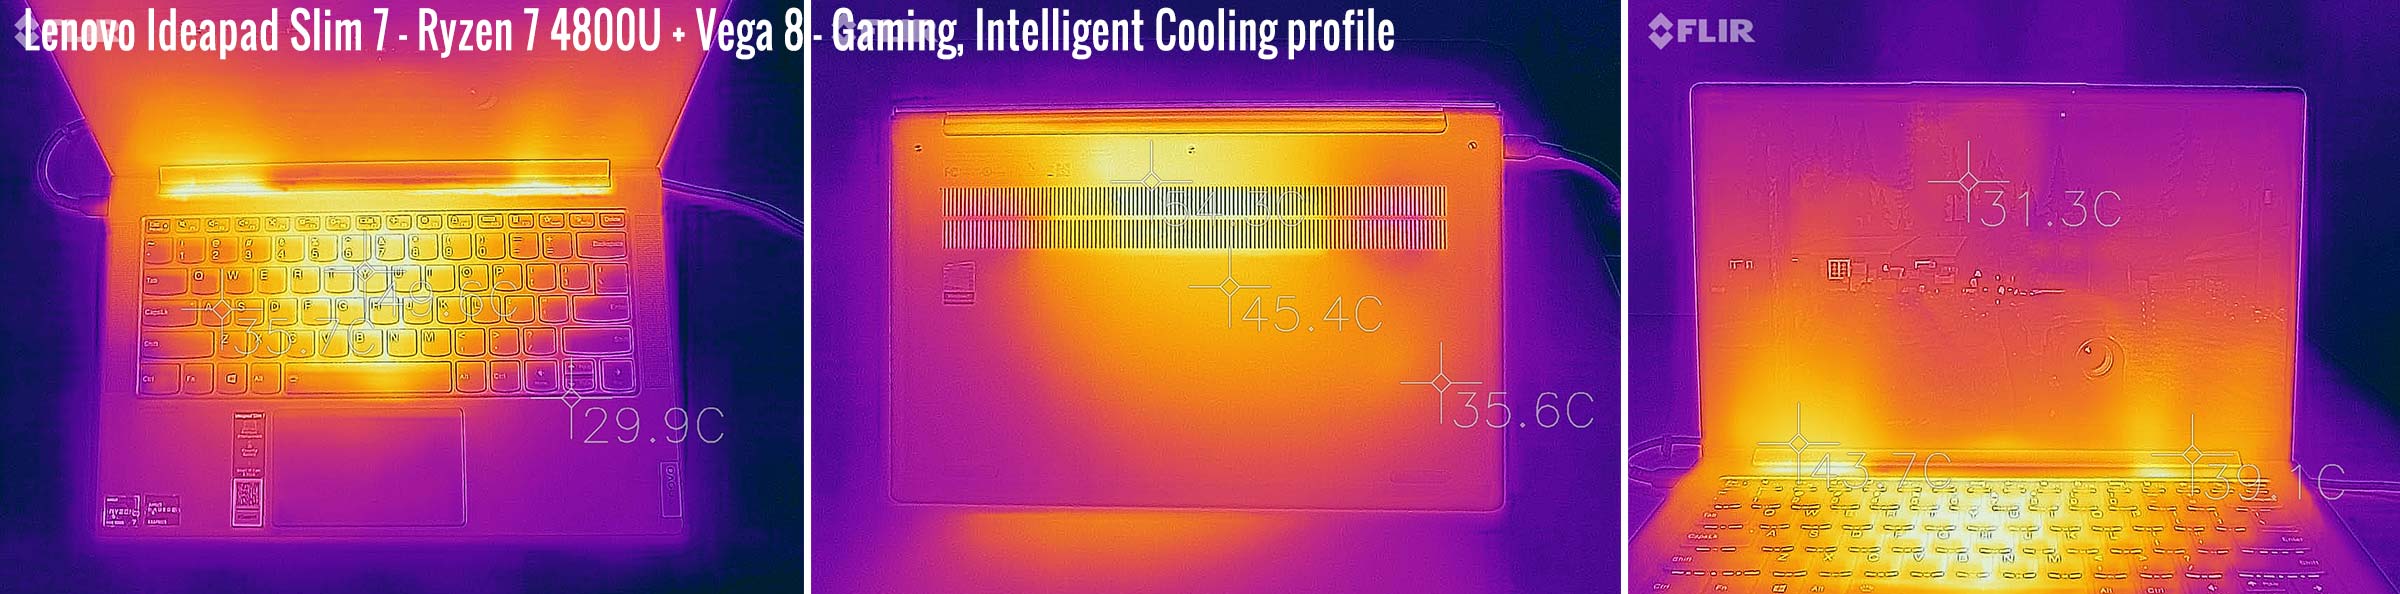 temperatures ideapadslim7 gaming intelligent